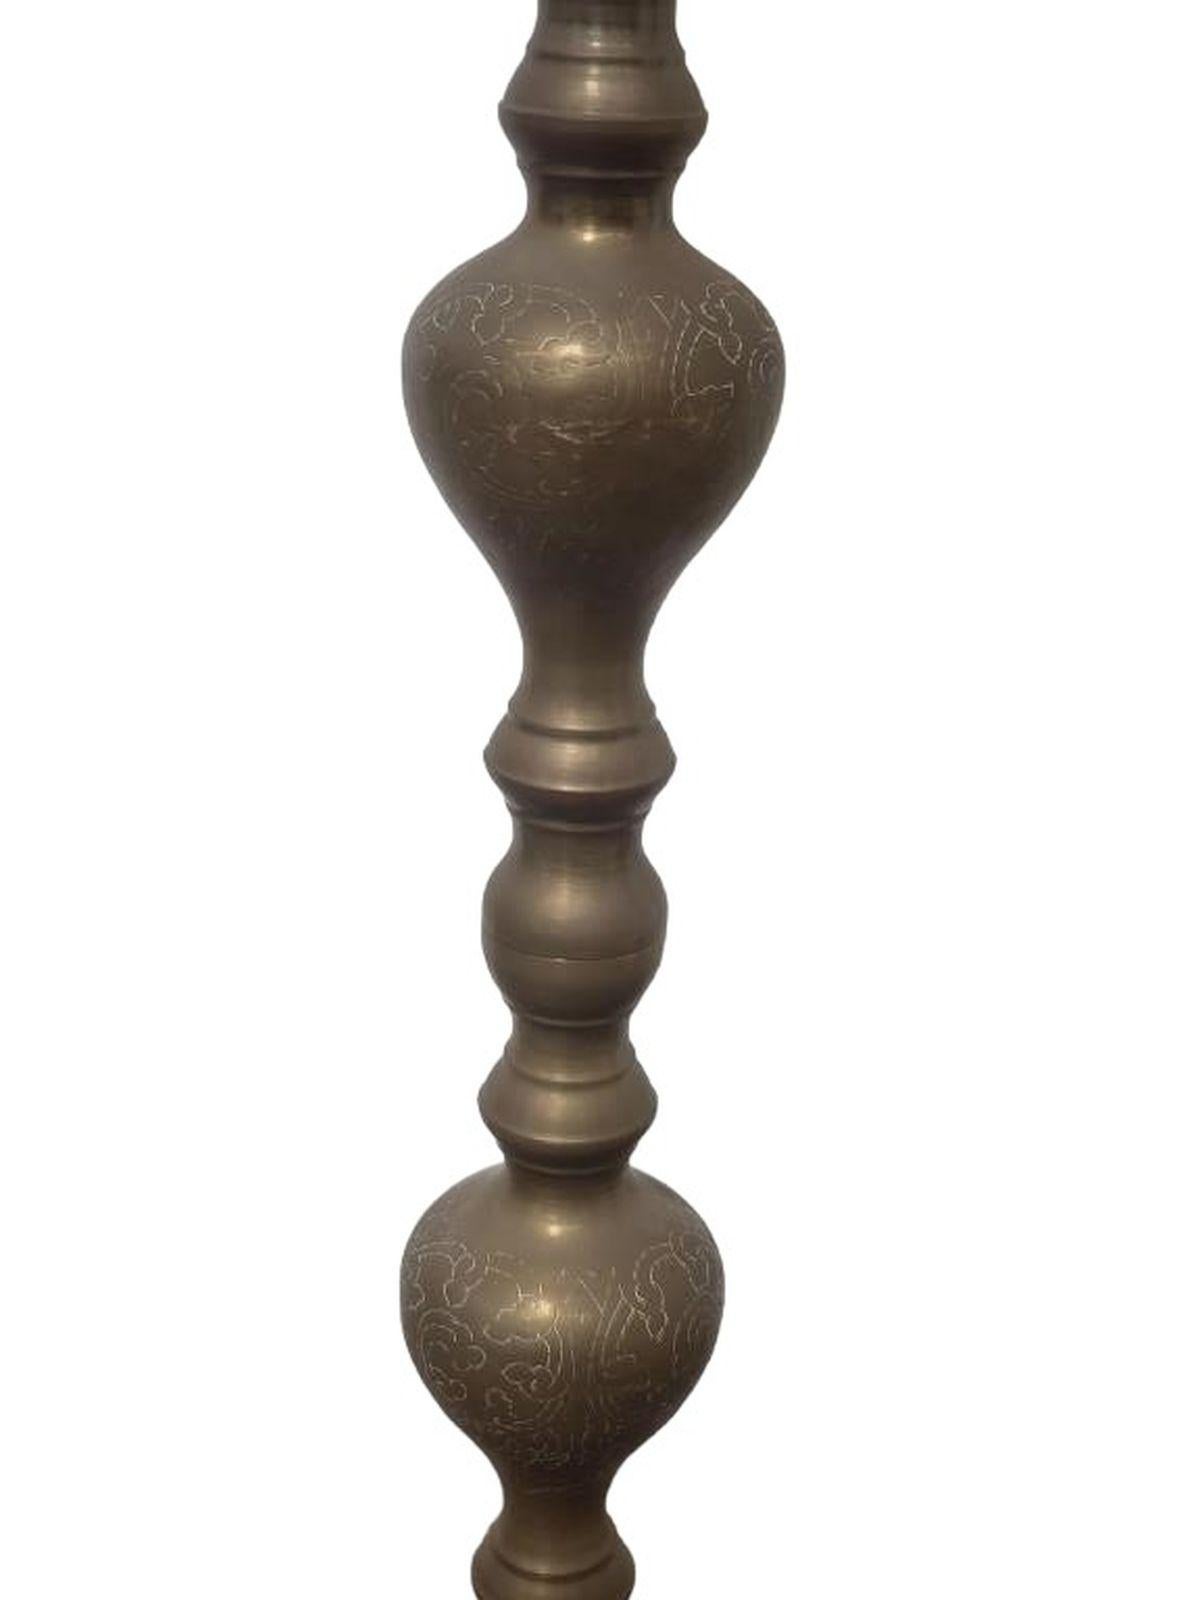 Pair of Tall Brass Candles Sticks measures approx. 49 high x 9.5 diameter each
